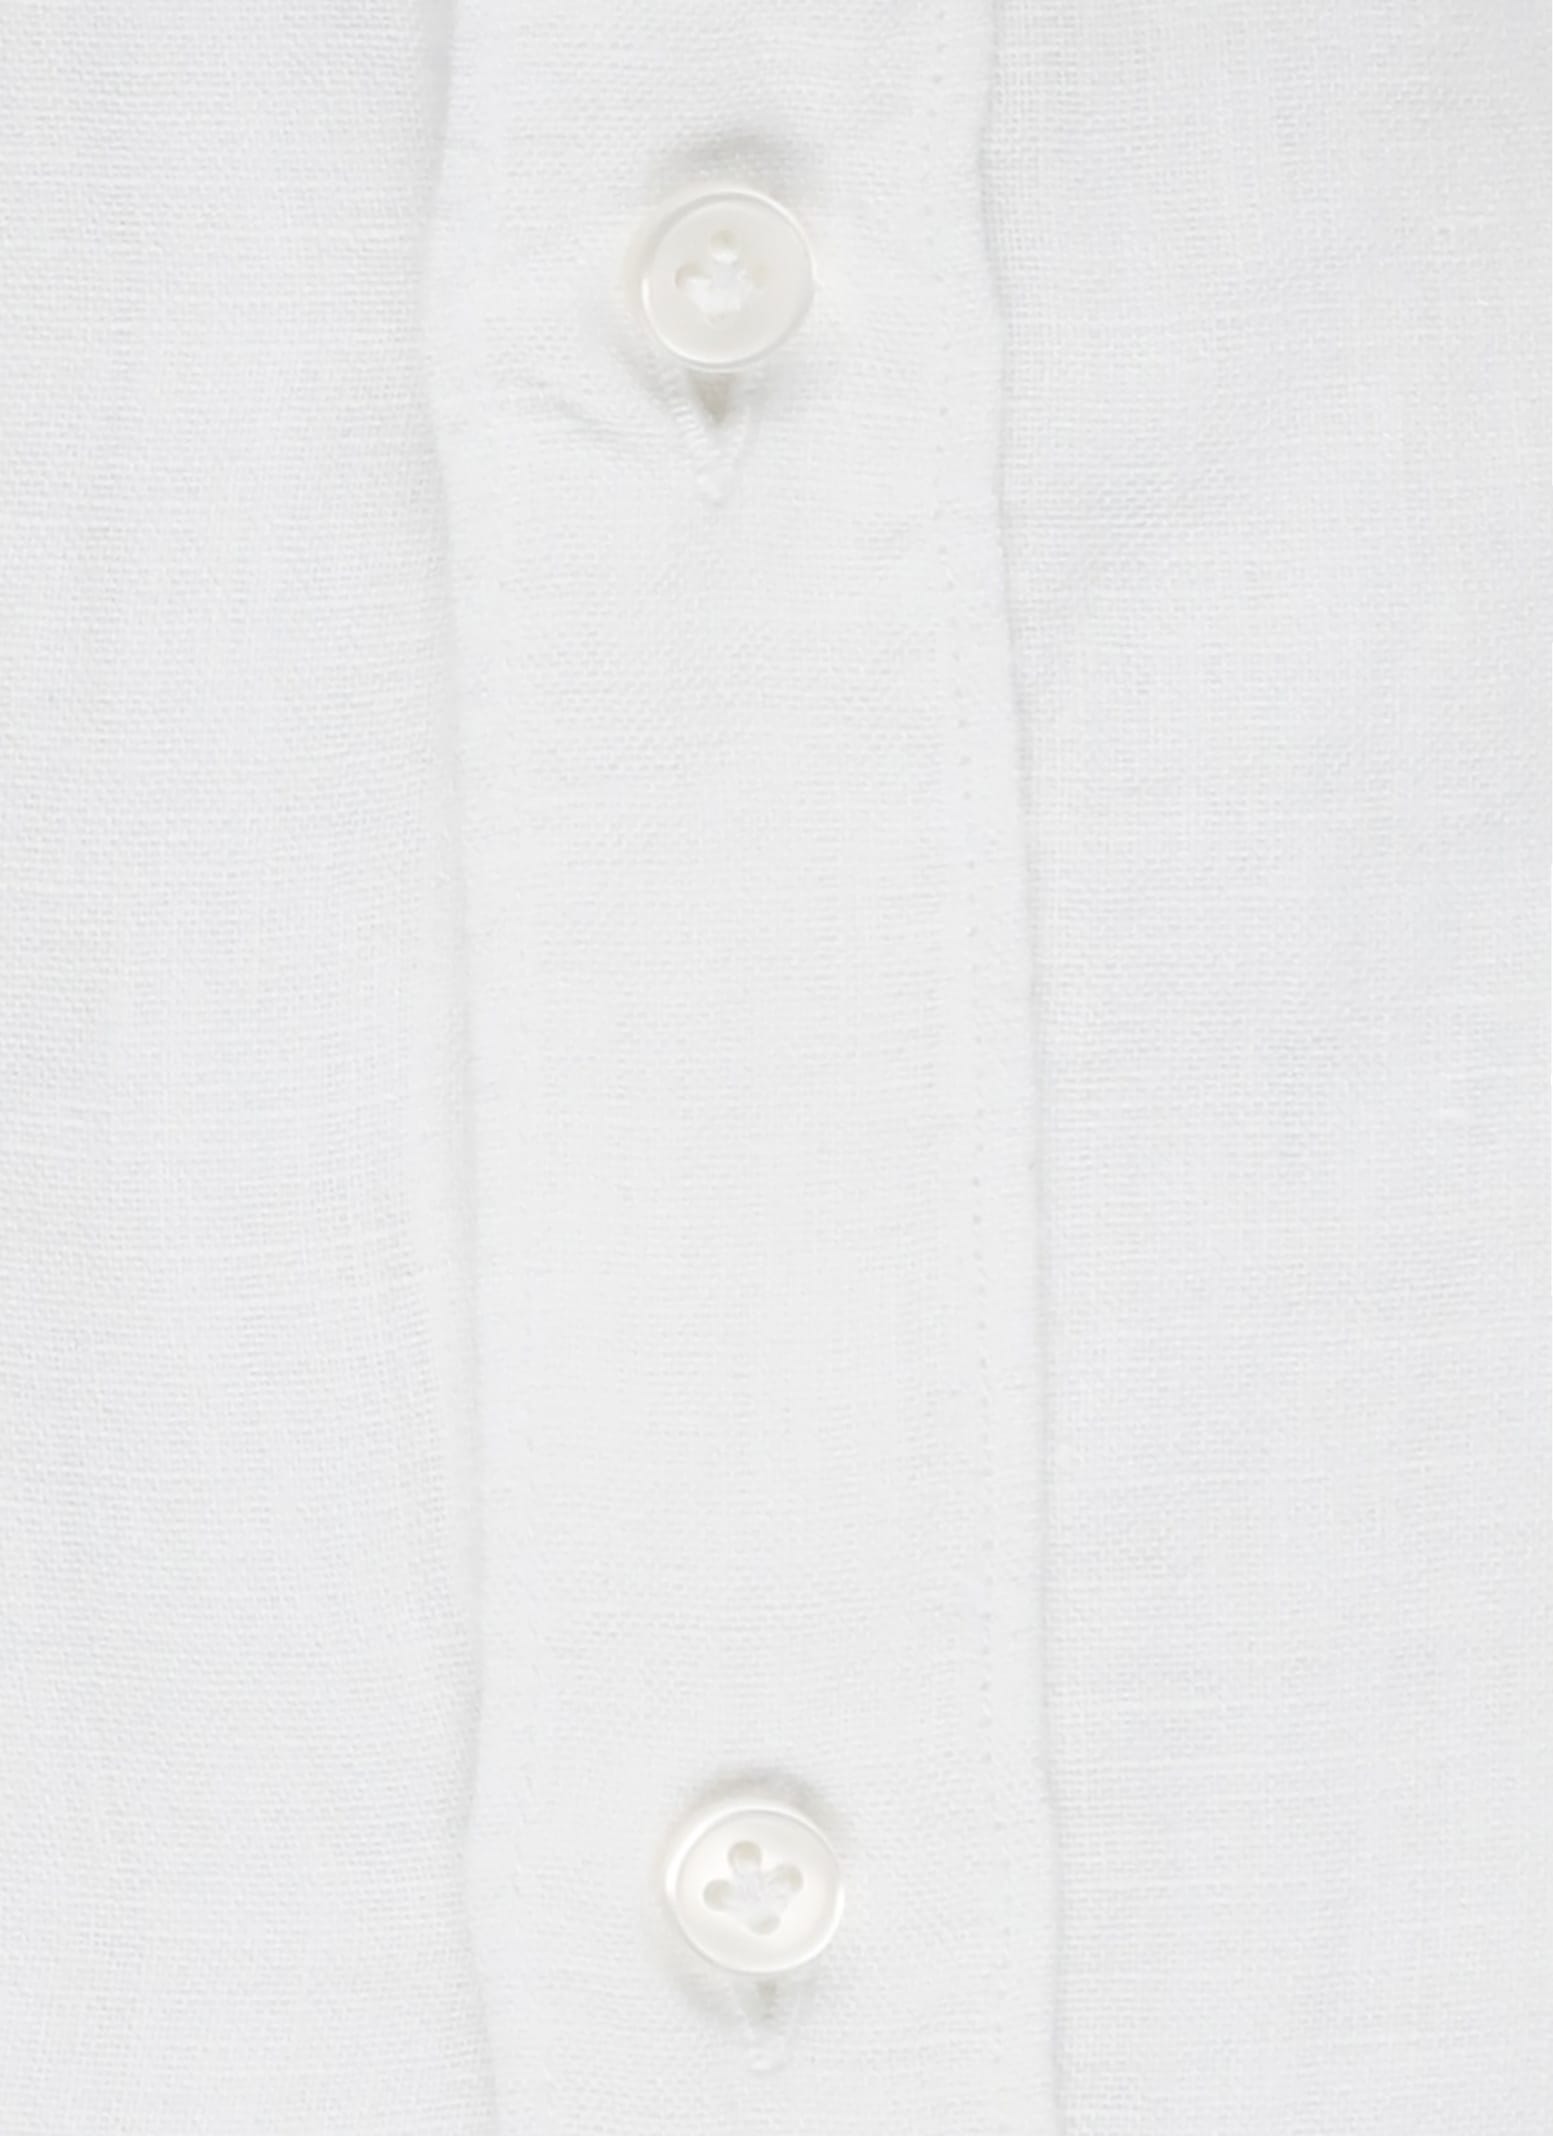 Shop Fay Linen Shirt In Bianco